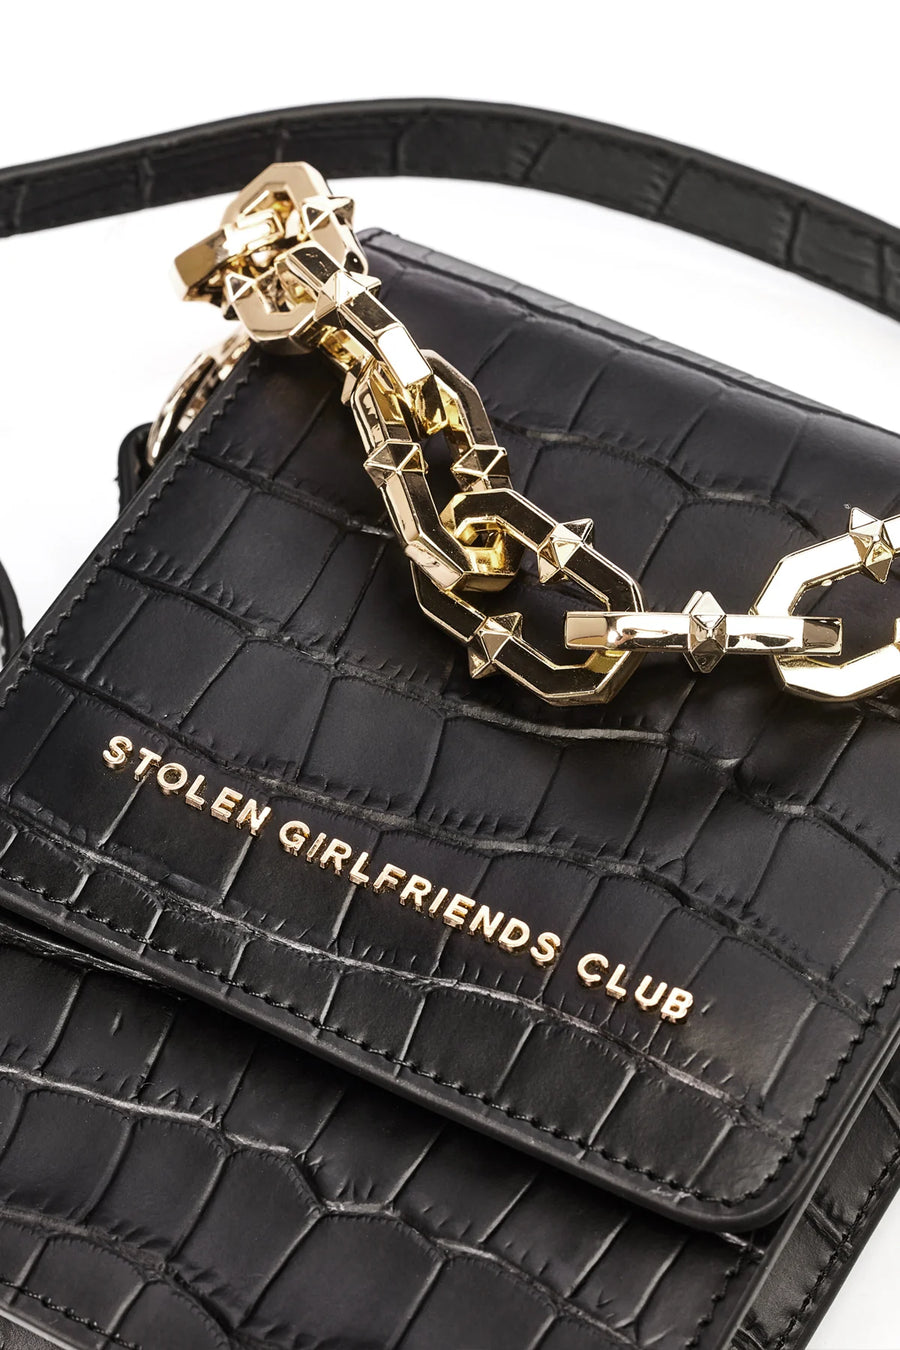 Stolen Girlfriends Club | On Tour Bag - Gold